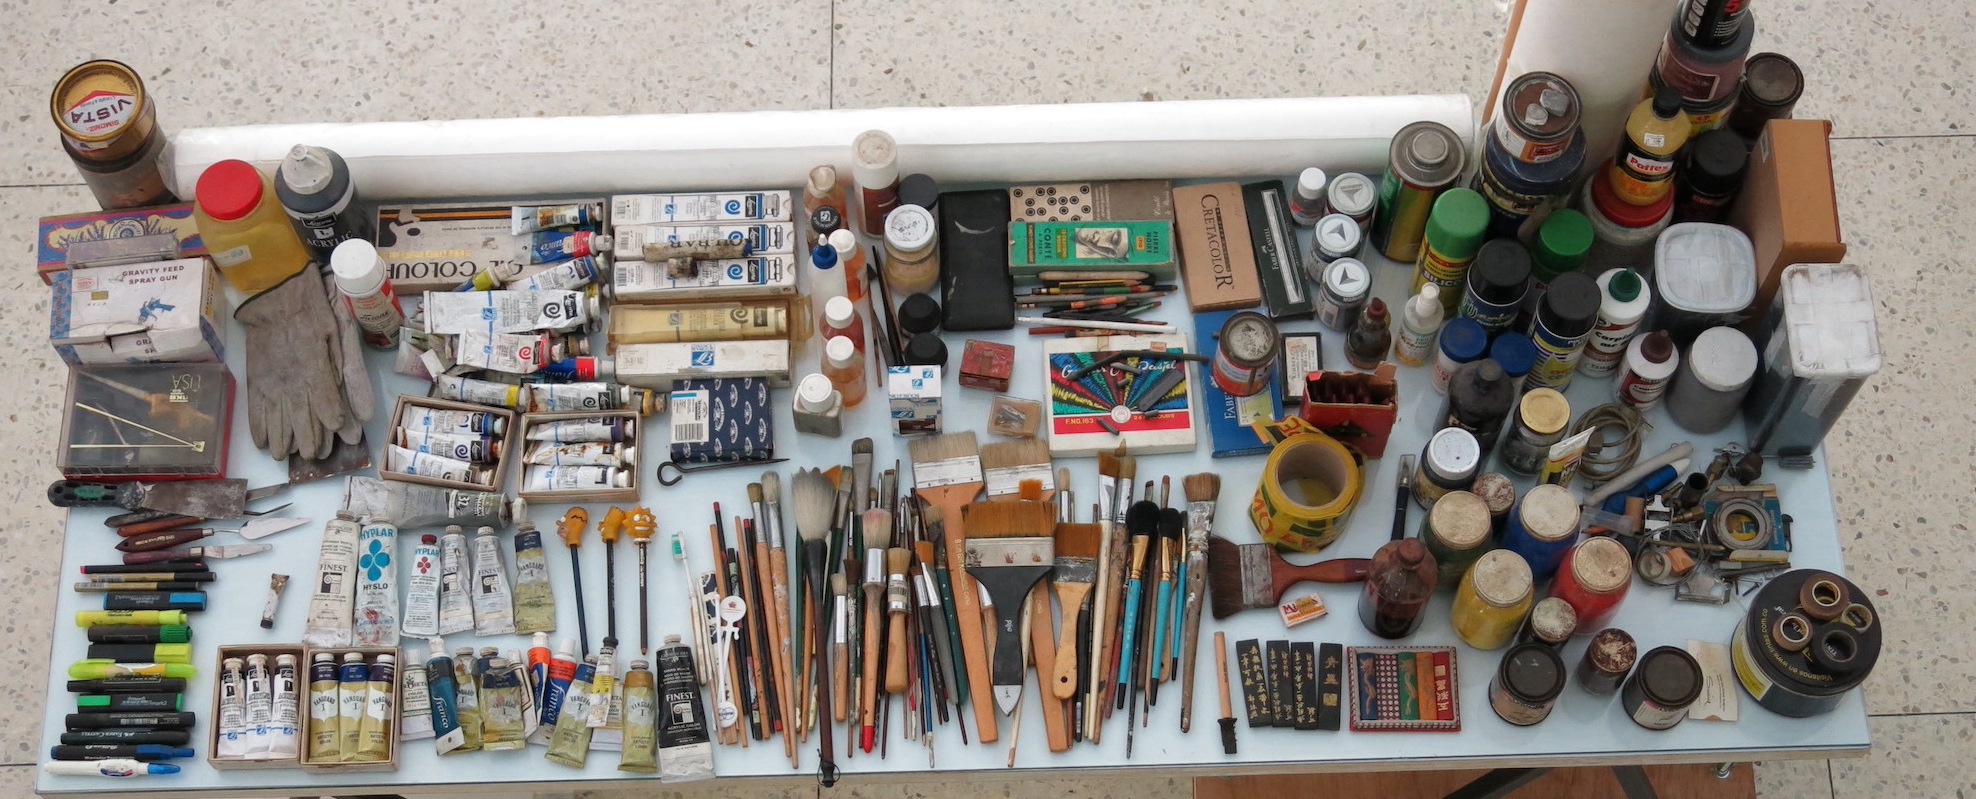 Una mesa vista desde arriba. En la superficie de la mesa, hay lápices, pinceles, pinturas y diferentes materiales y herramientas usados por artistas.